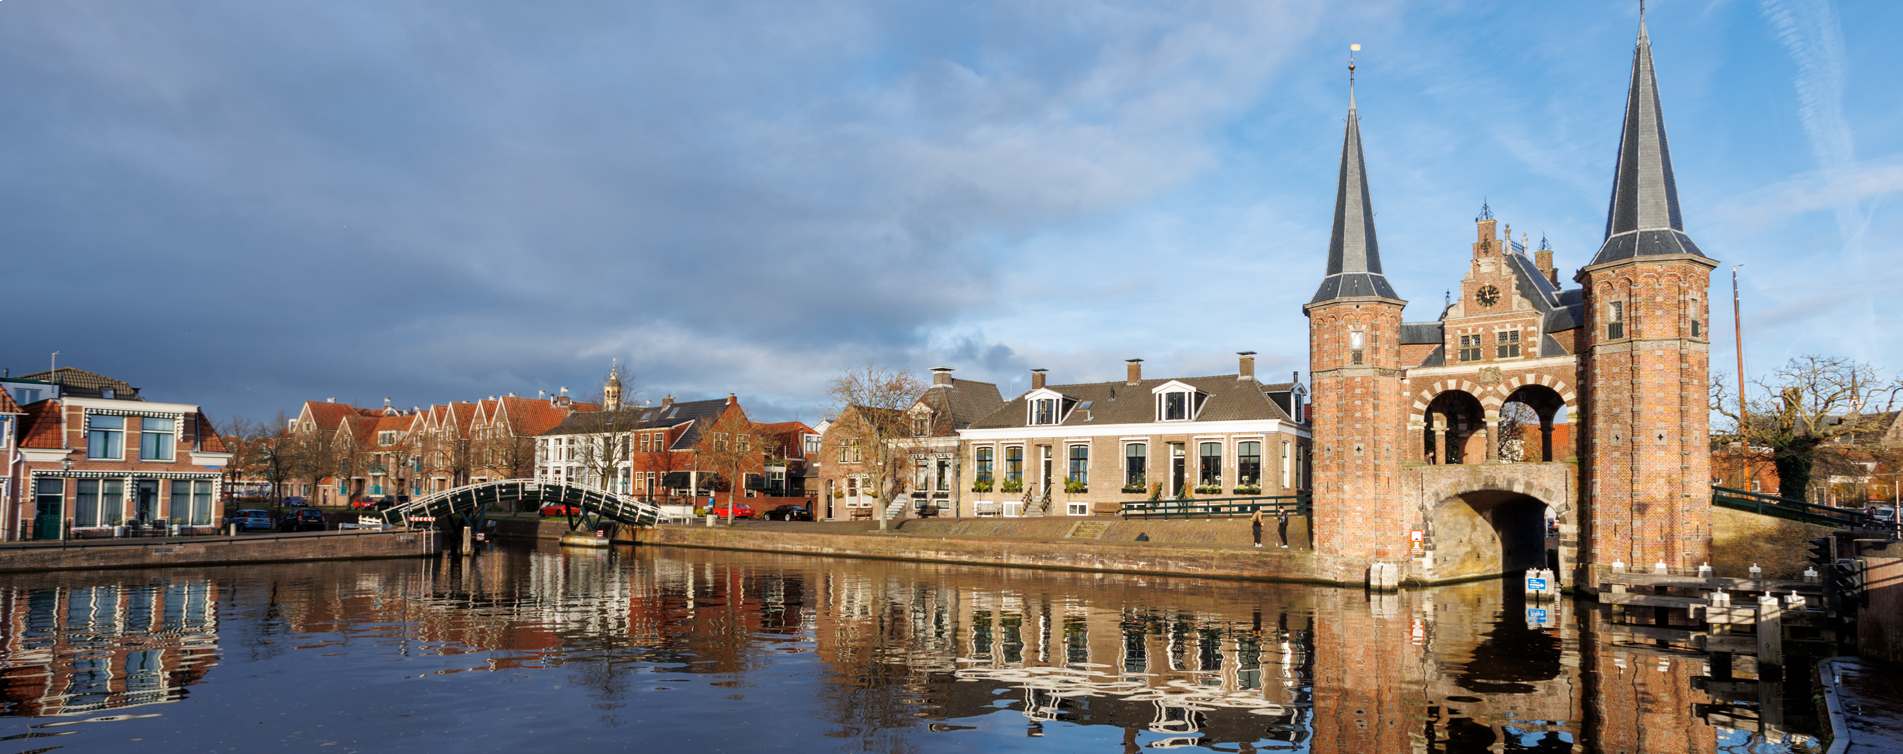 Historische Waterpoort van Sneek - Van Campen en Dijkstra